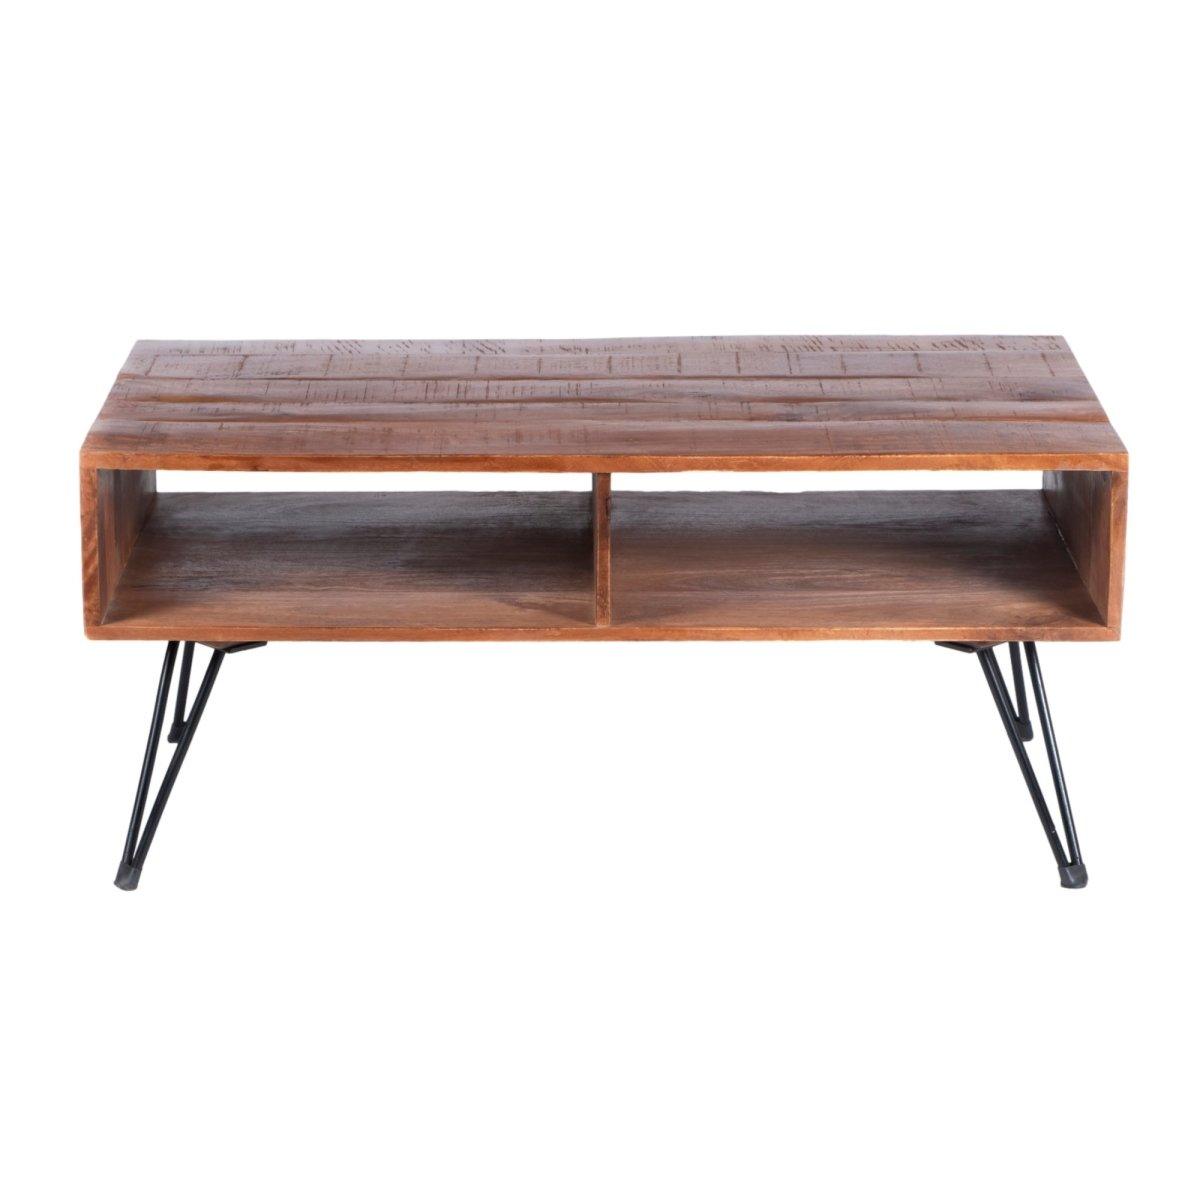 Table basse ouverte en bois de manguier - Rustic Furniture Outlet